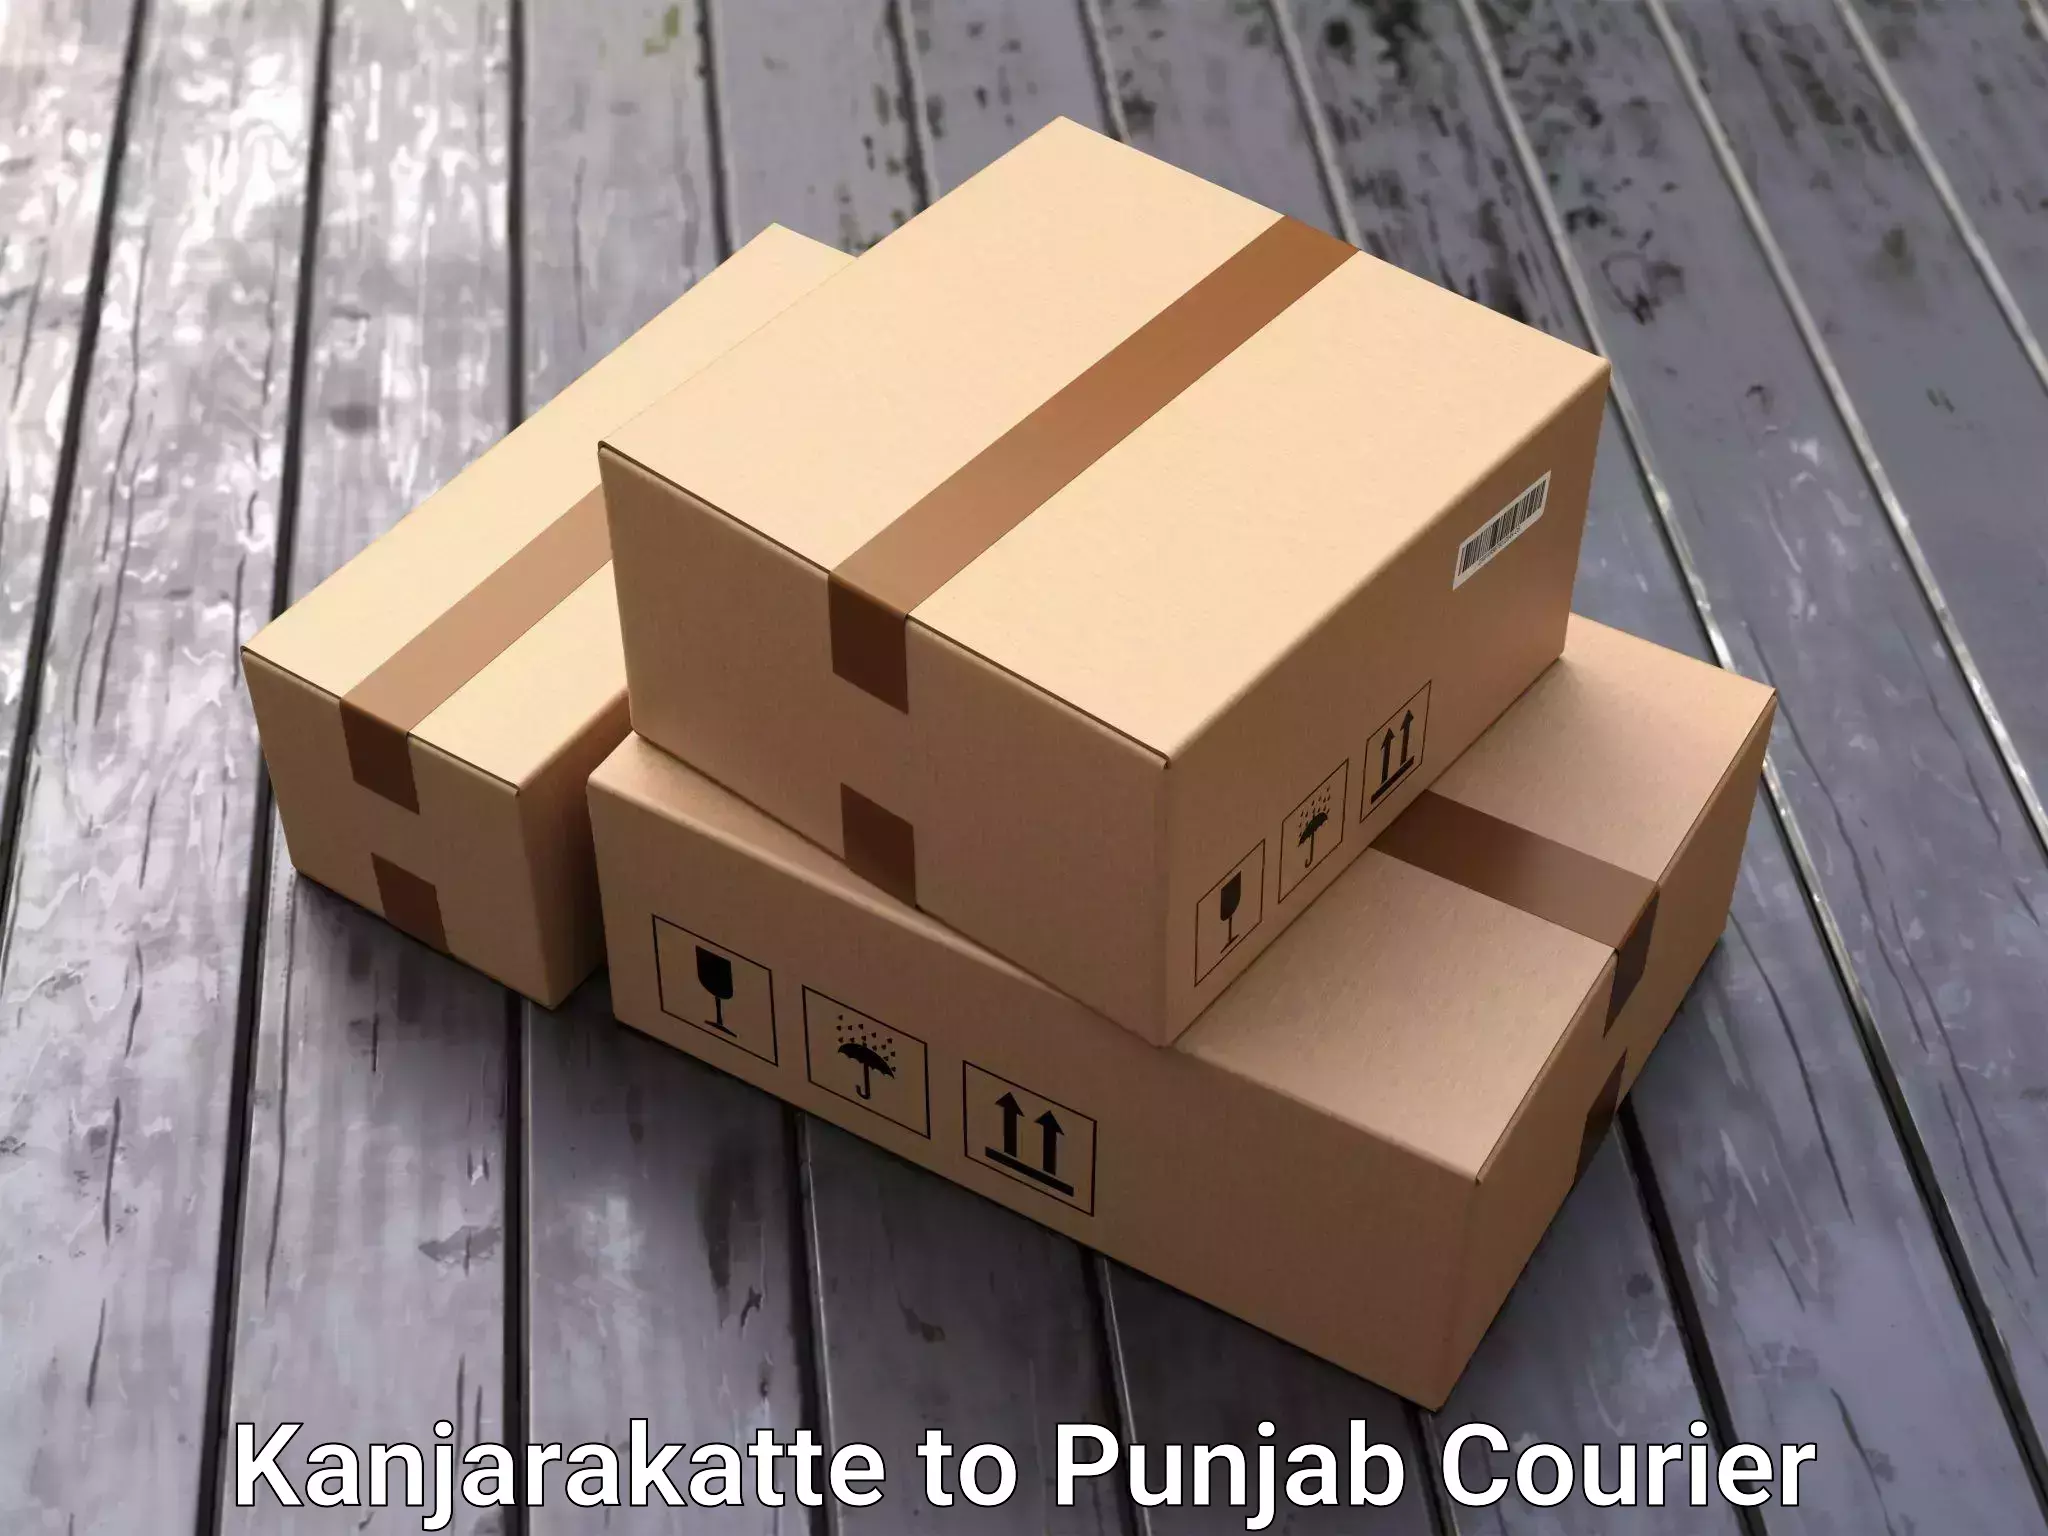 Stress-free household moving Kanjarakatte to Punjab